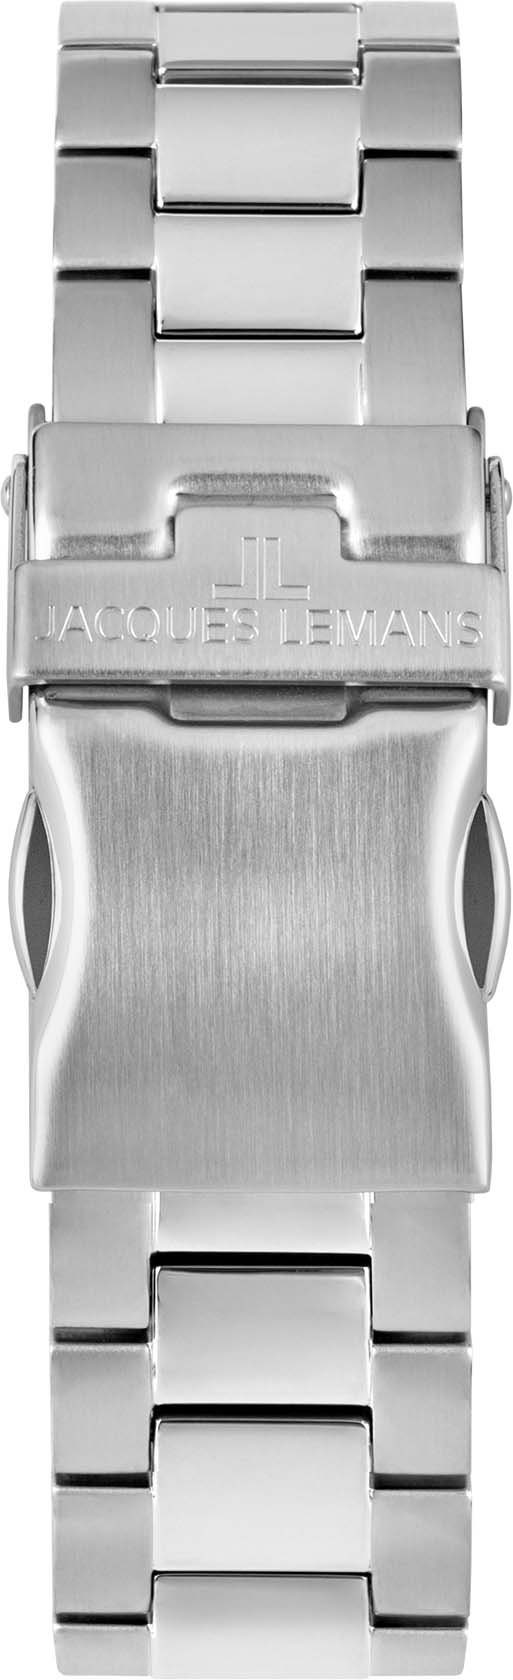 Lemans Jacques Multifunktionsuhr 42-11E schwarz